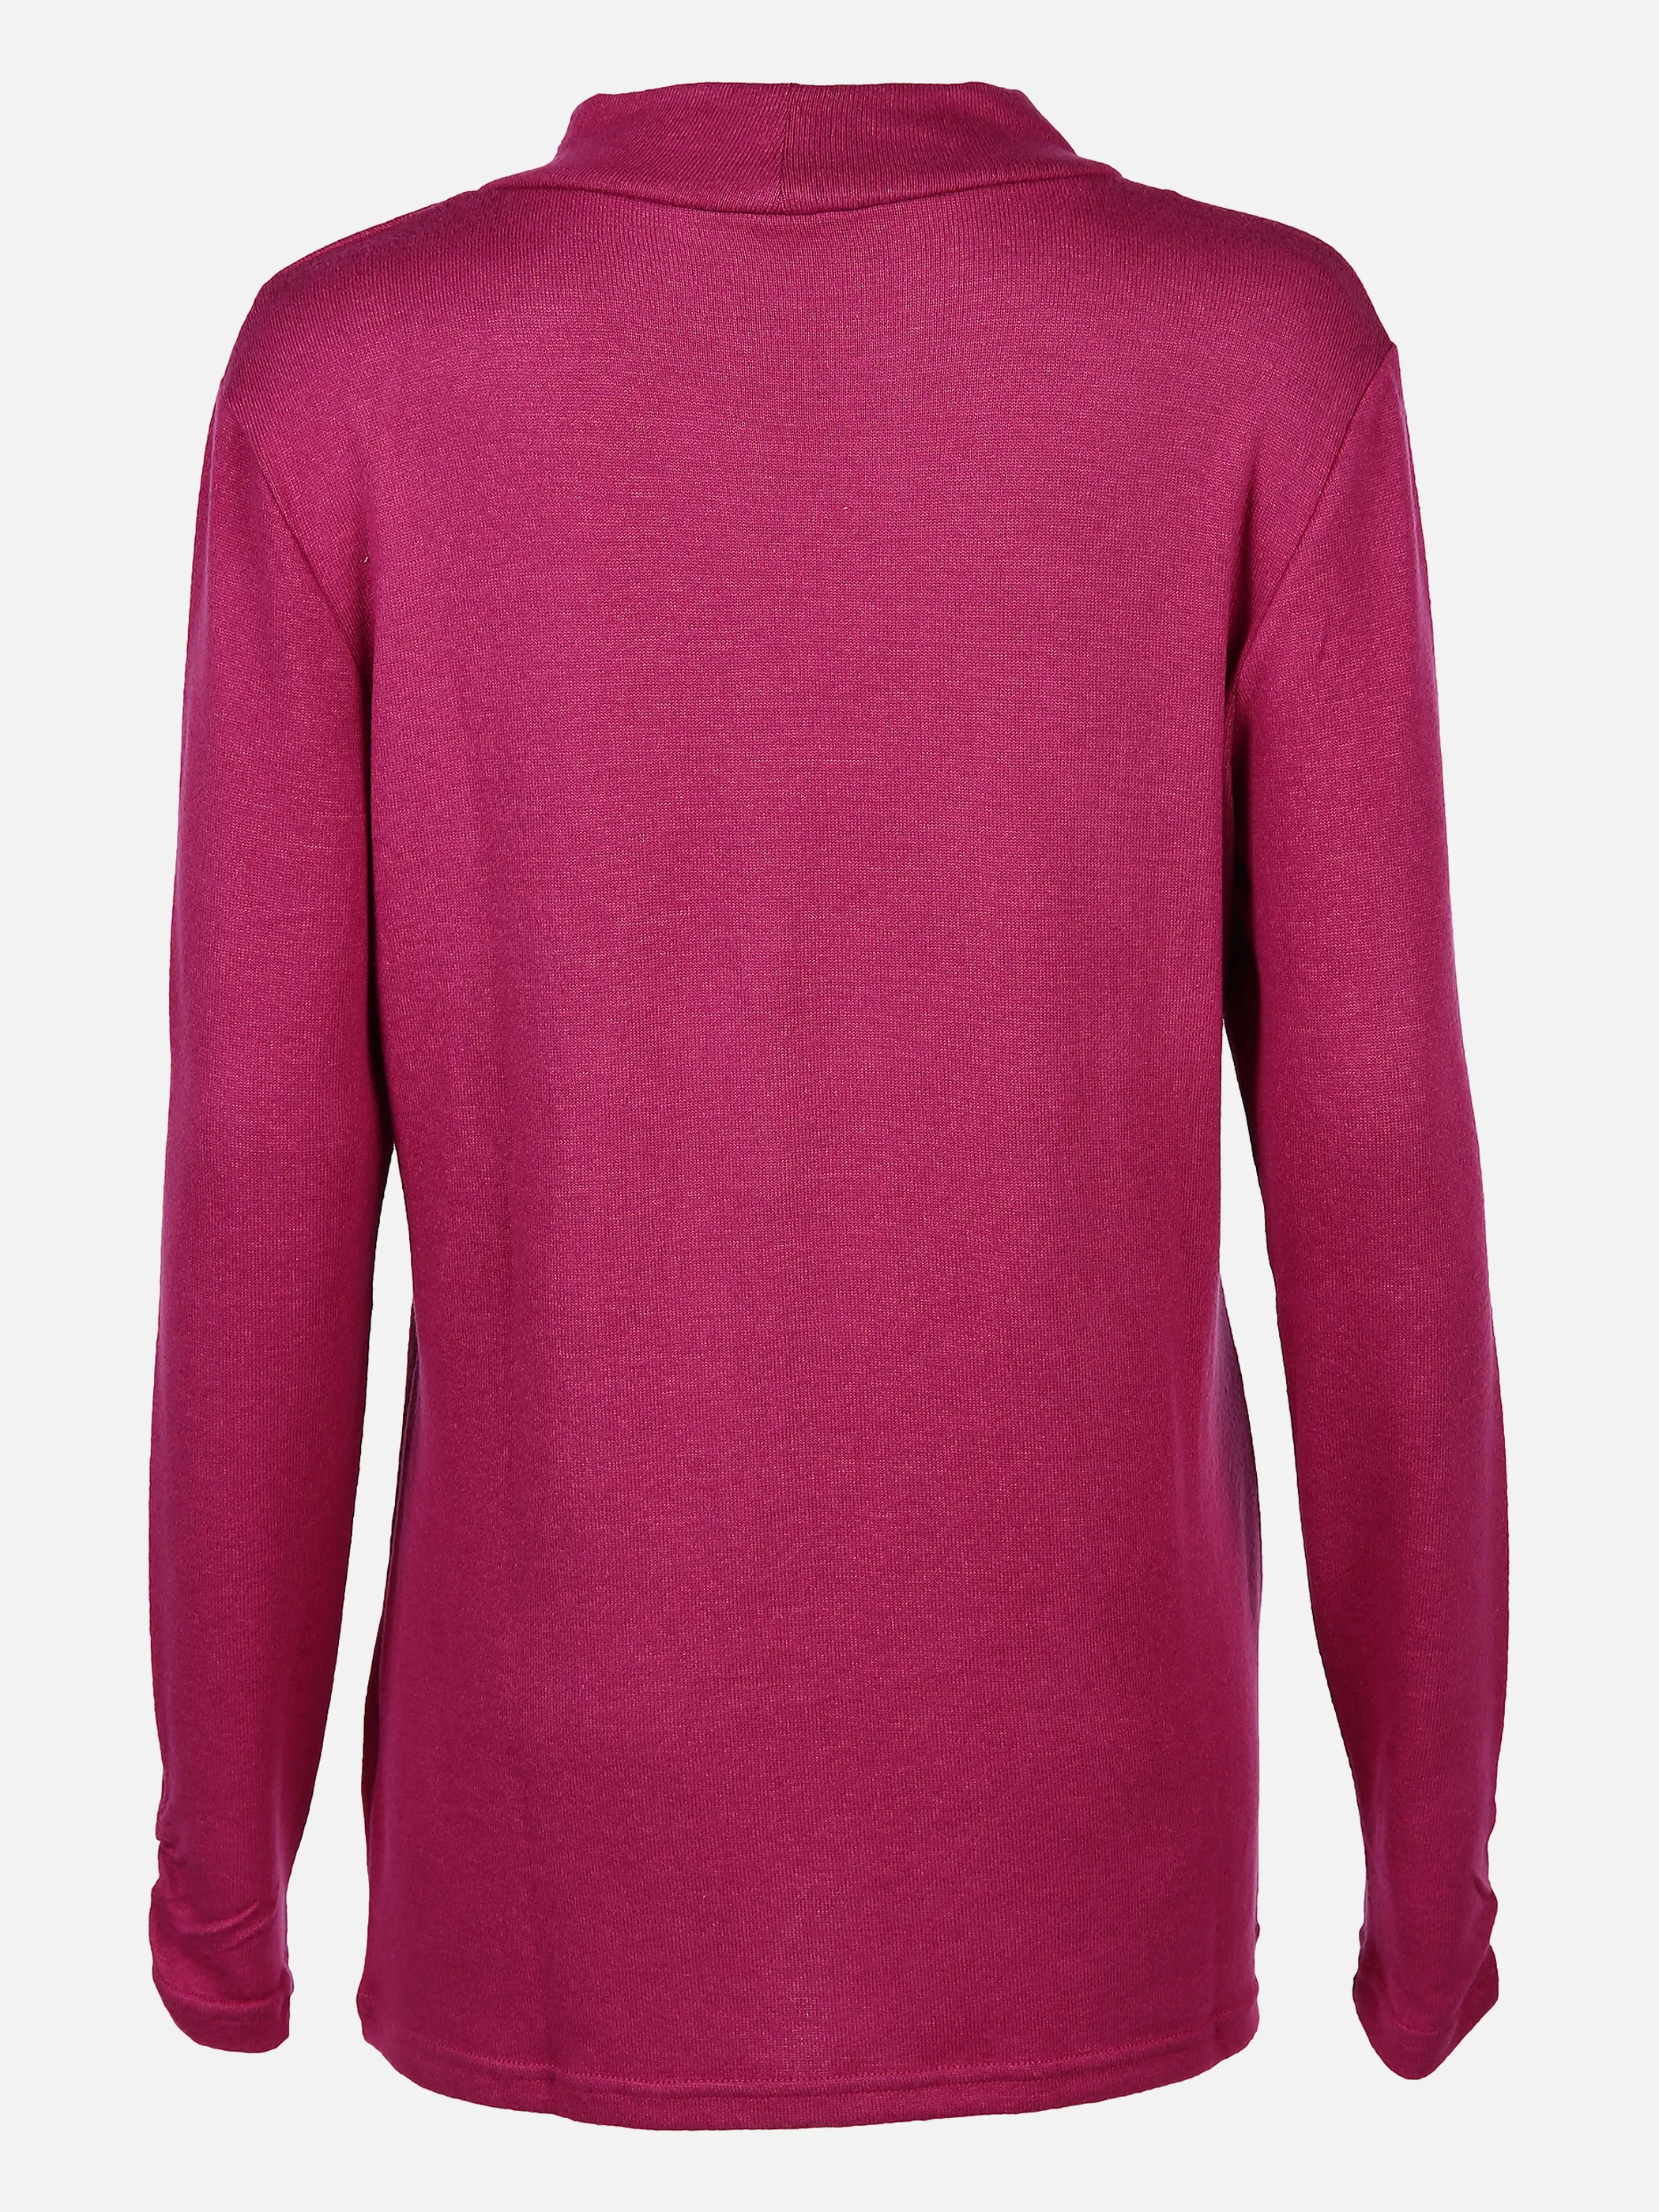 Sure Da-Flausch-Stehbundshirt Pink 833056 PINK/MEL 2